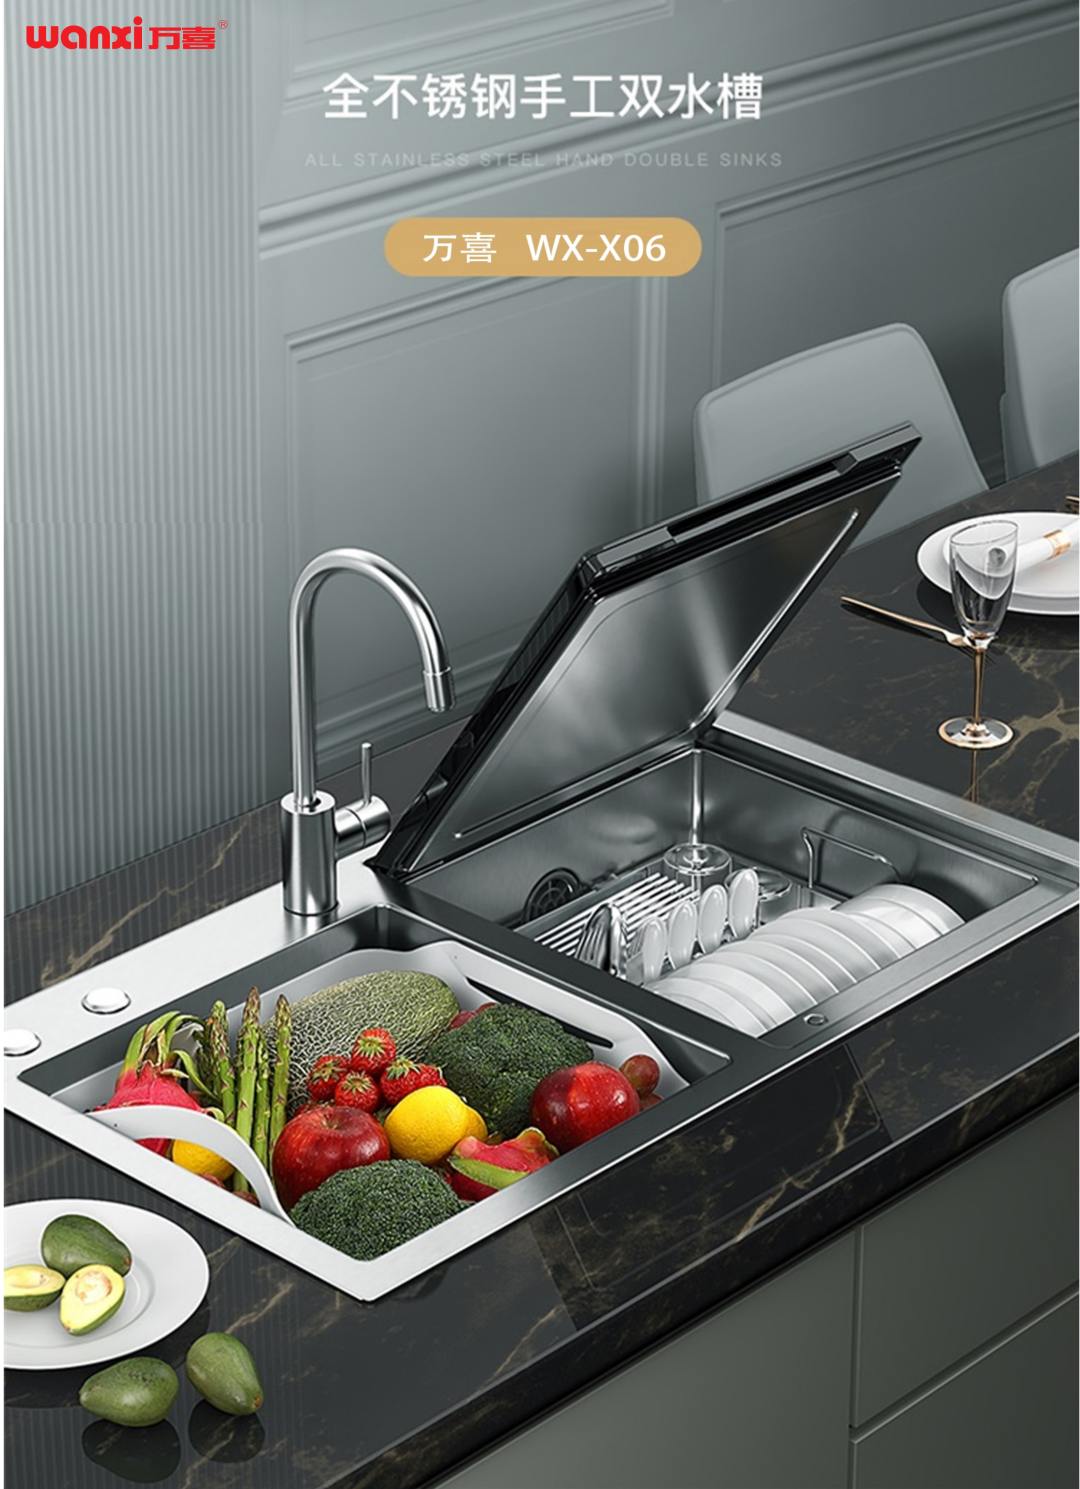 打造智能厨房的高级感，米乐m6
WX-X06水槽洗碗机来营造